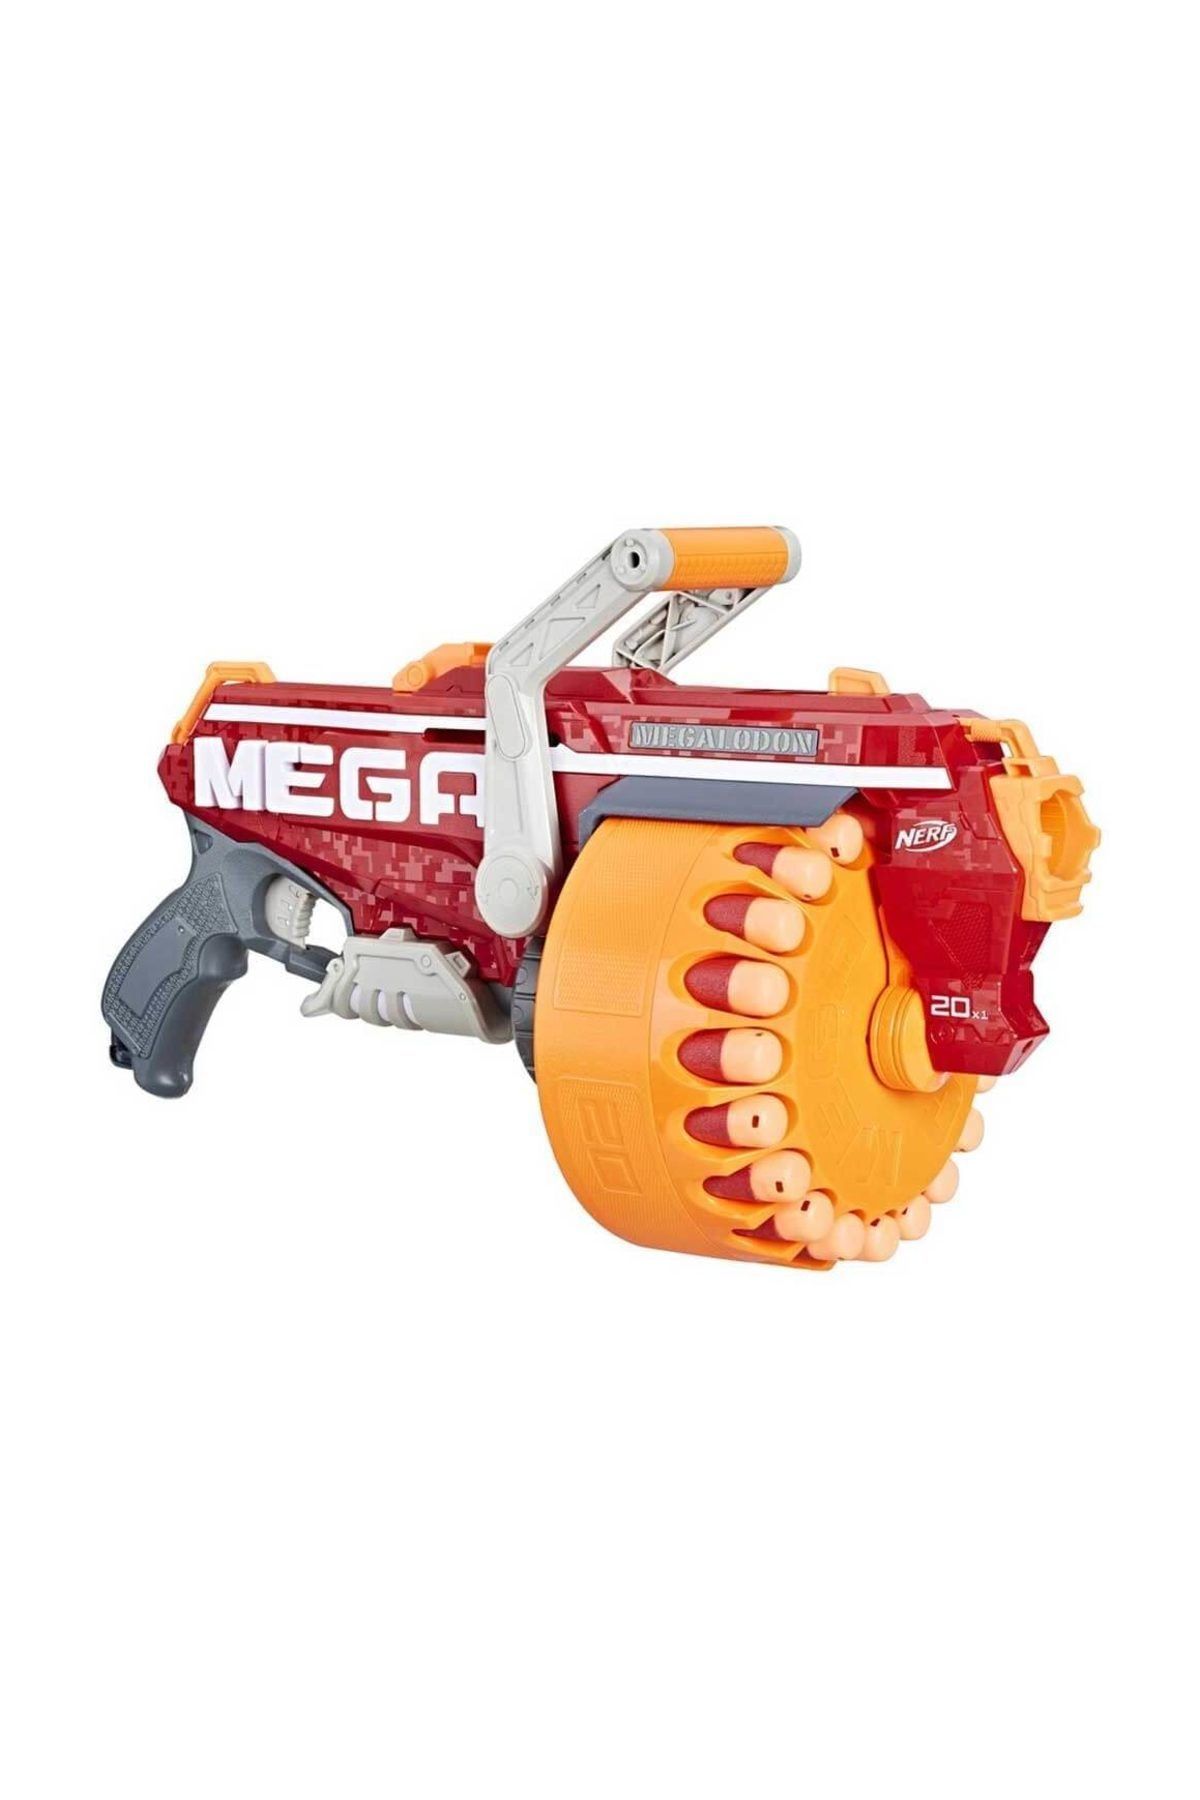 Nerf Nerf N-strike Mega Megalodon